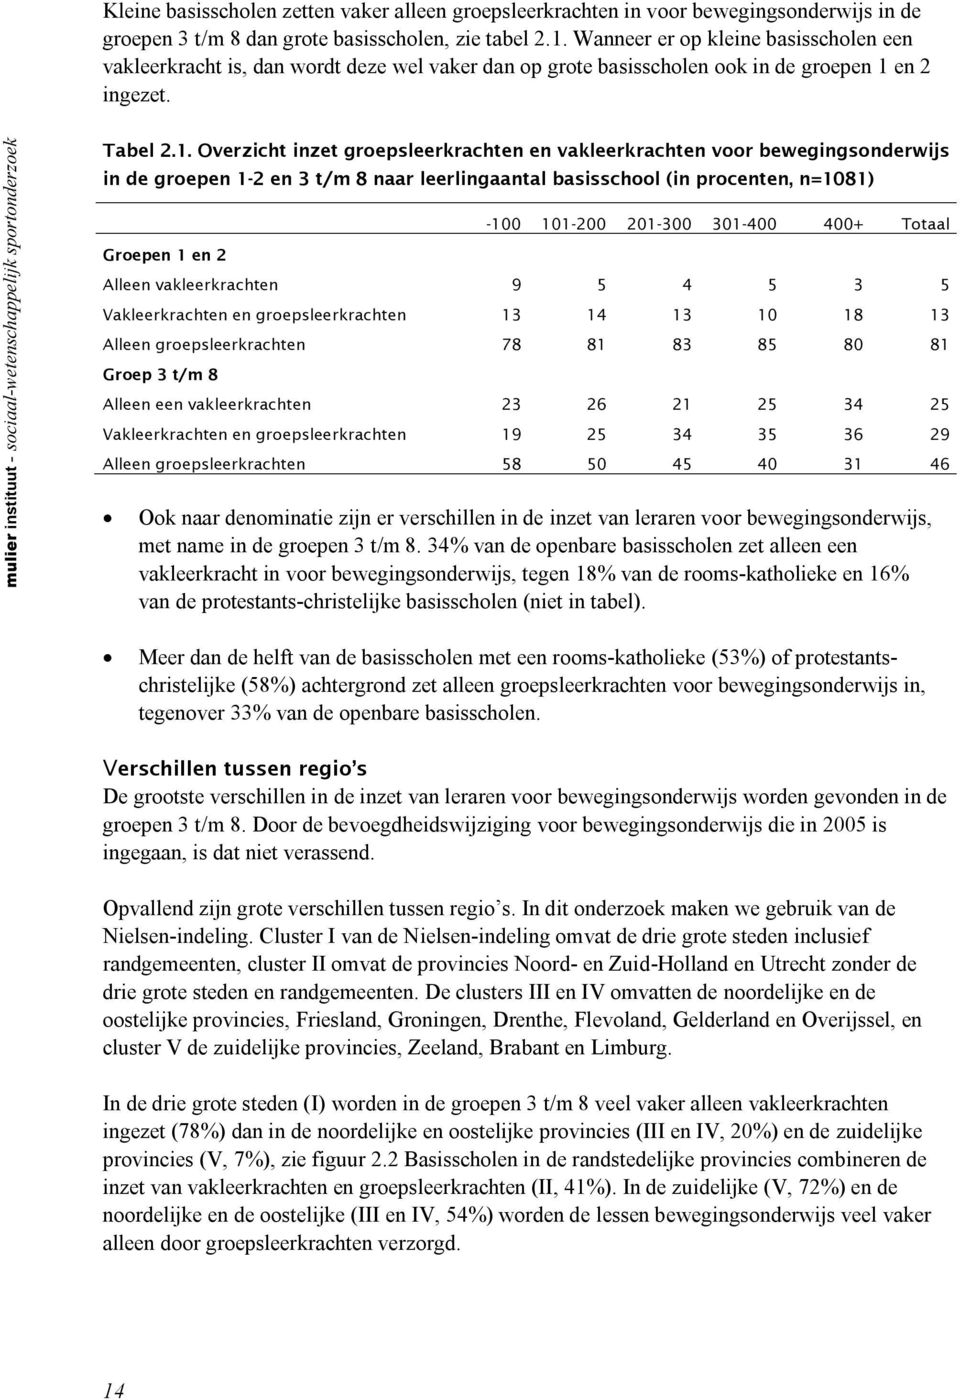 mulier instituut - sociaal-wetenschappelijk sportonderzoek Tabel 2.1.